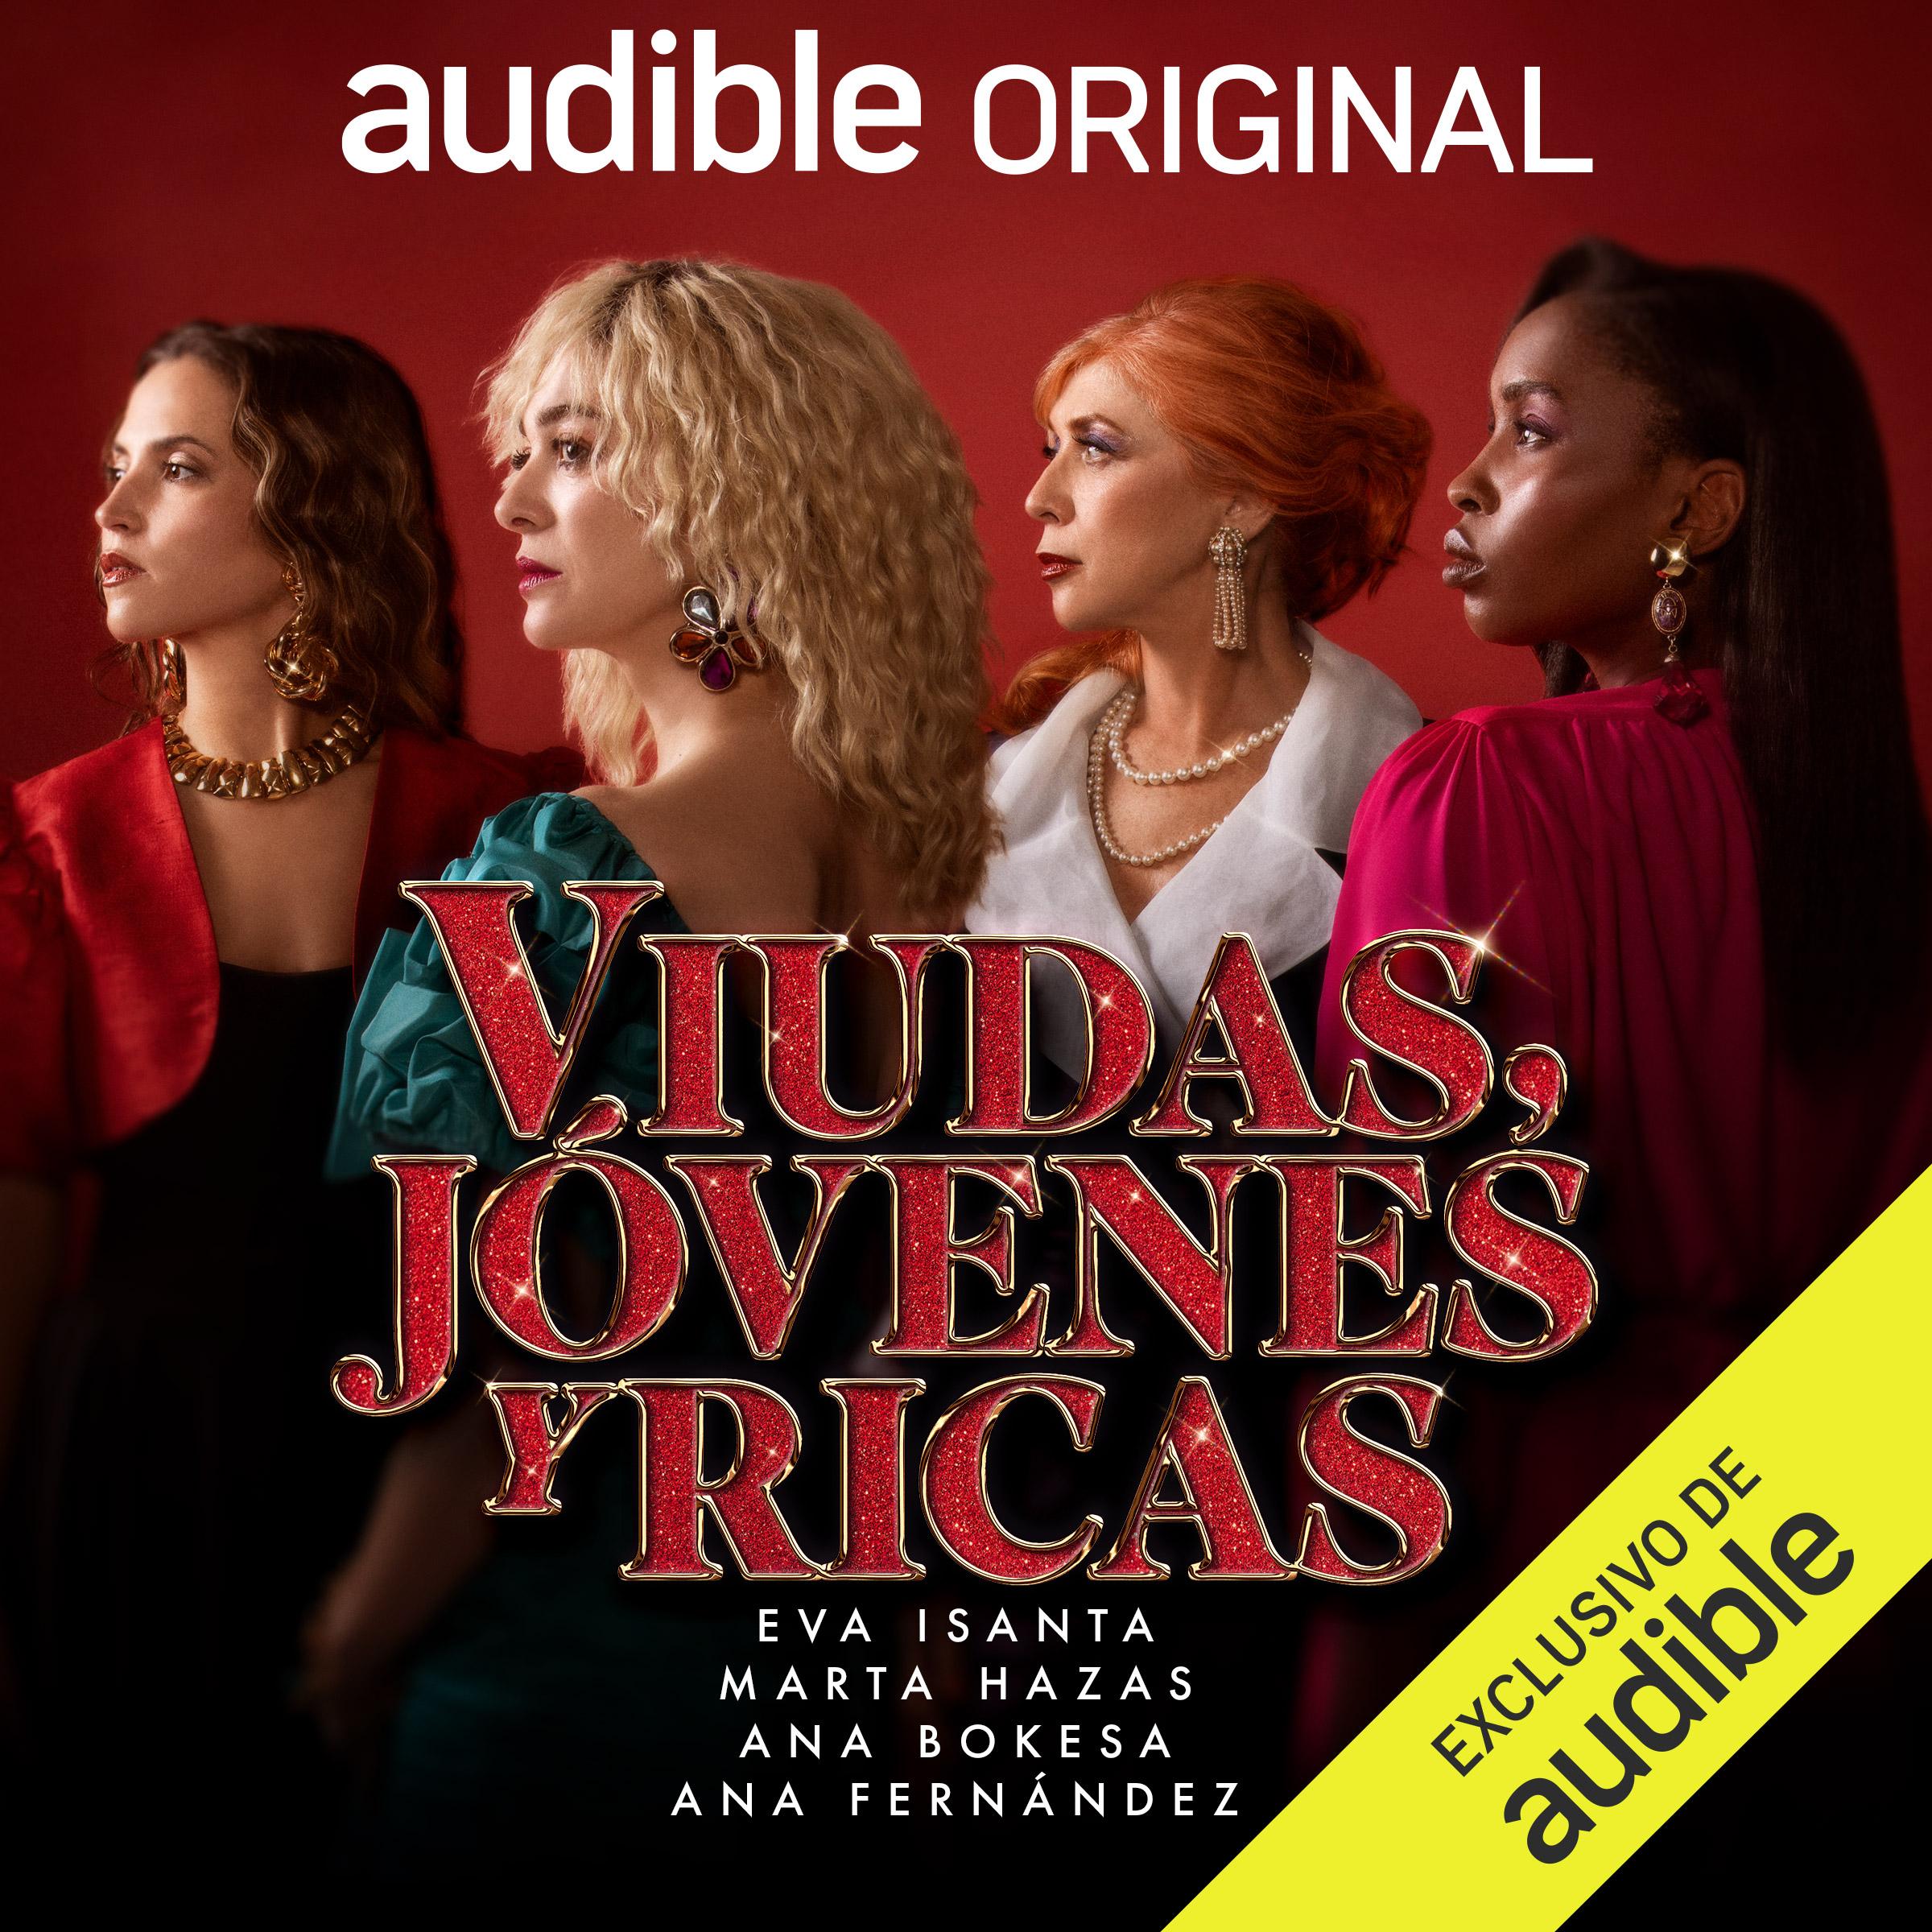 audible_cover_caratula_viudas_jovenes_ricas